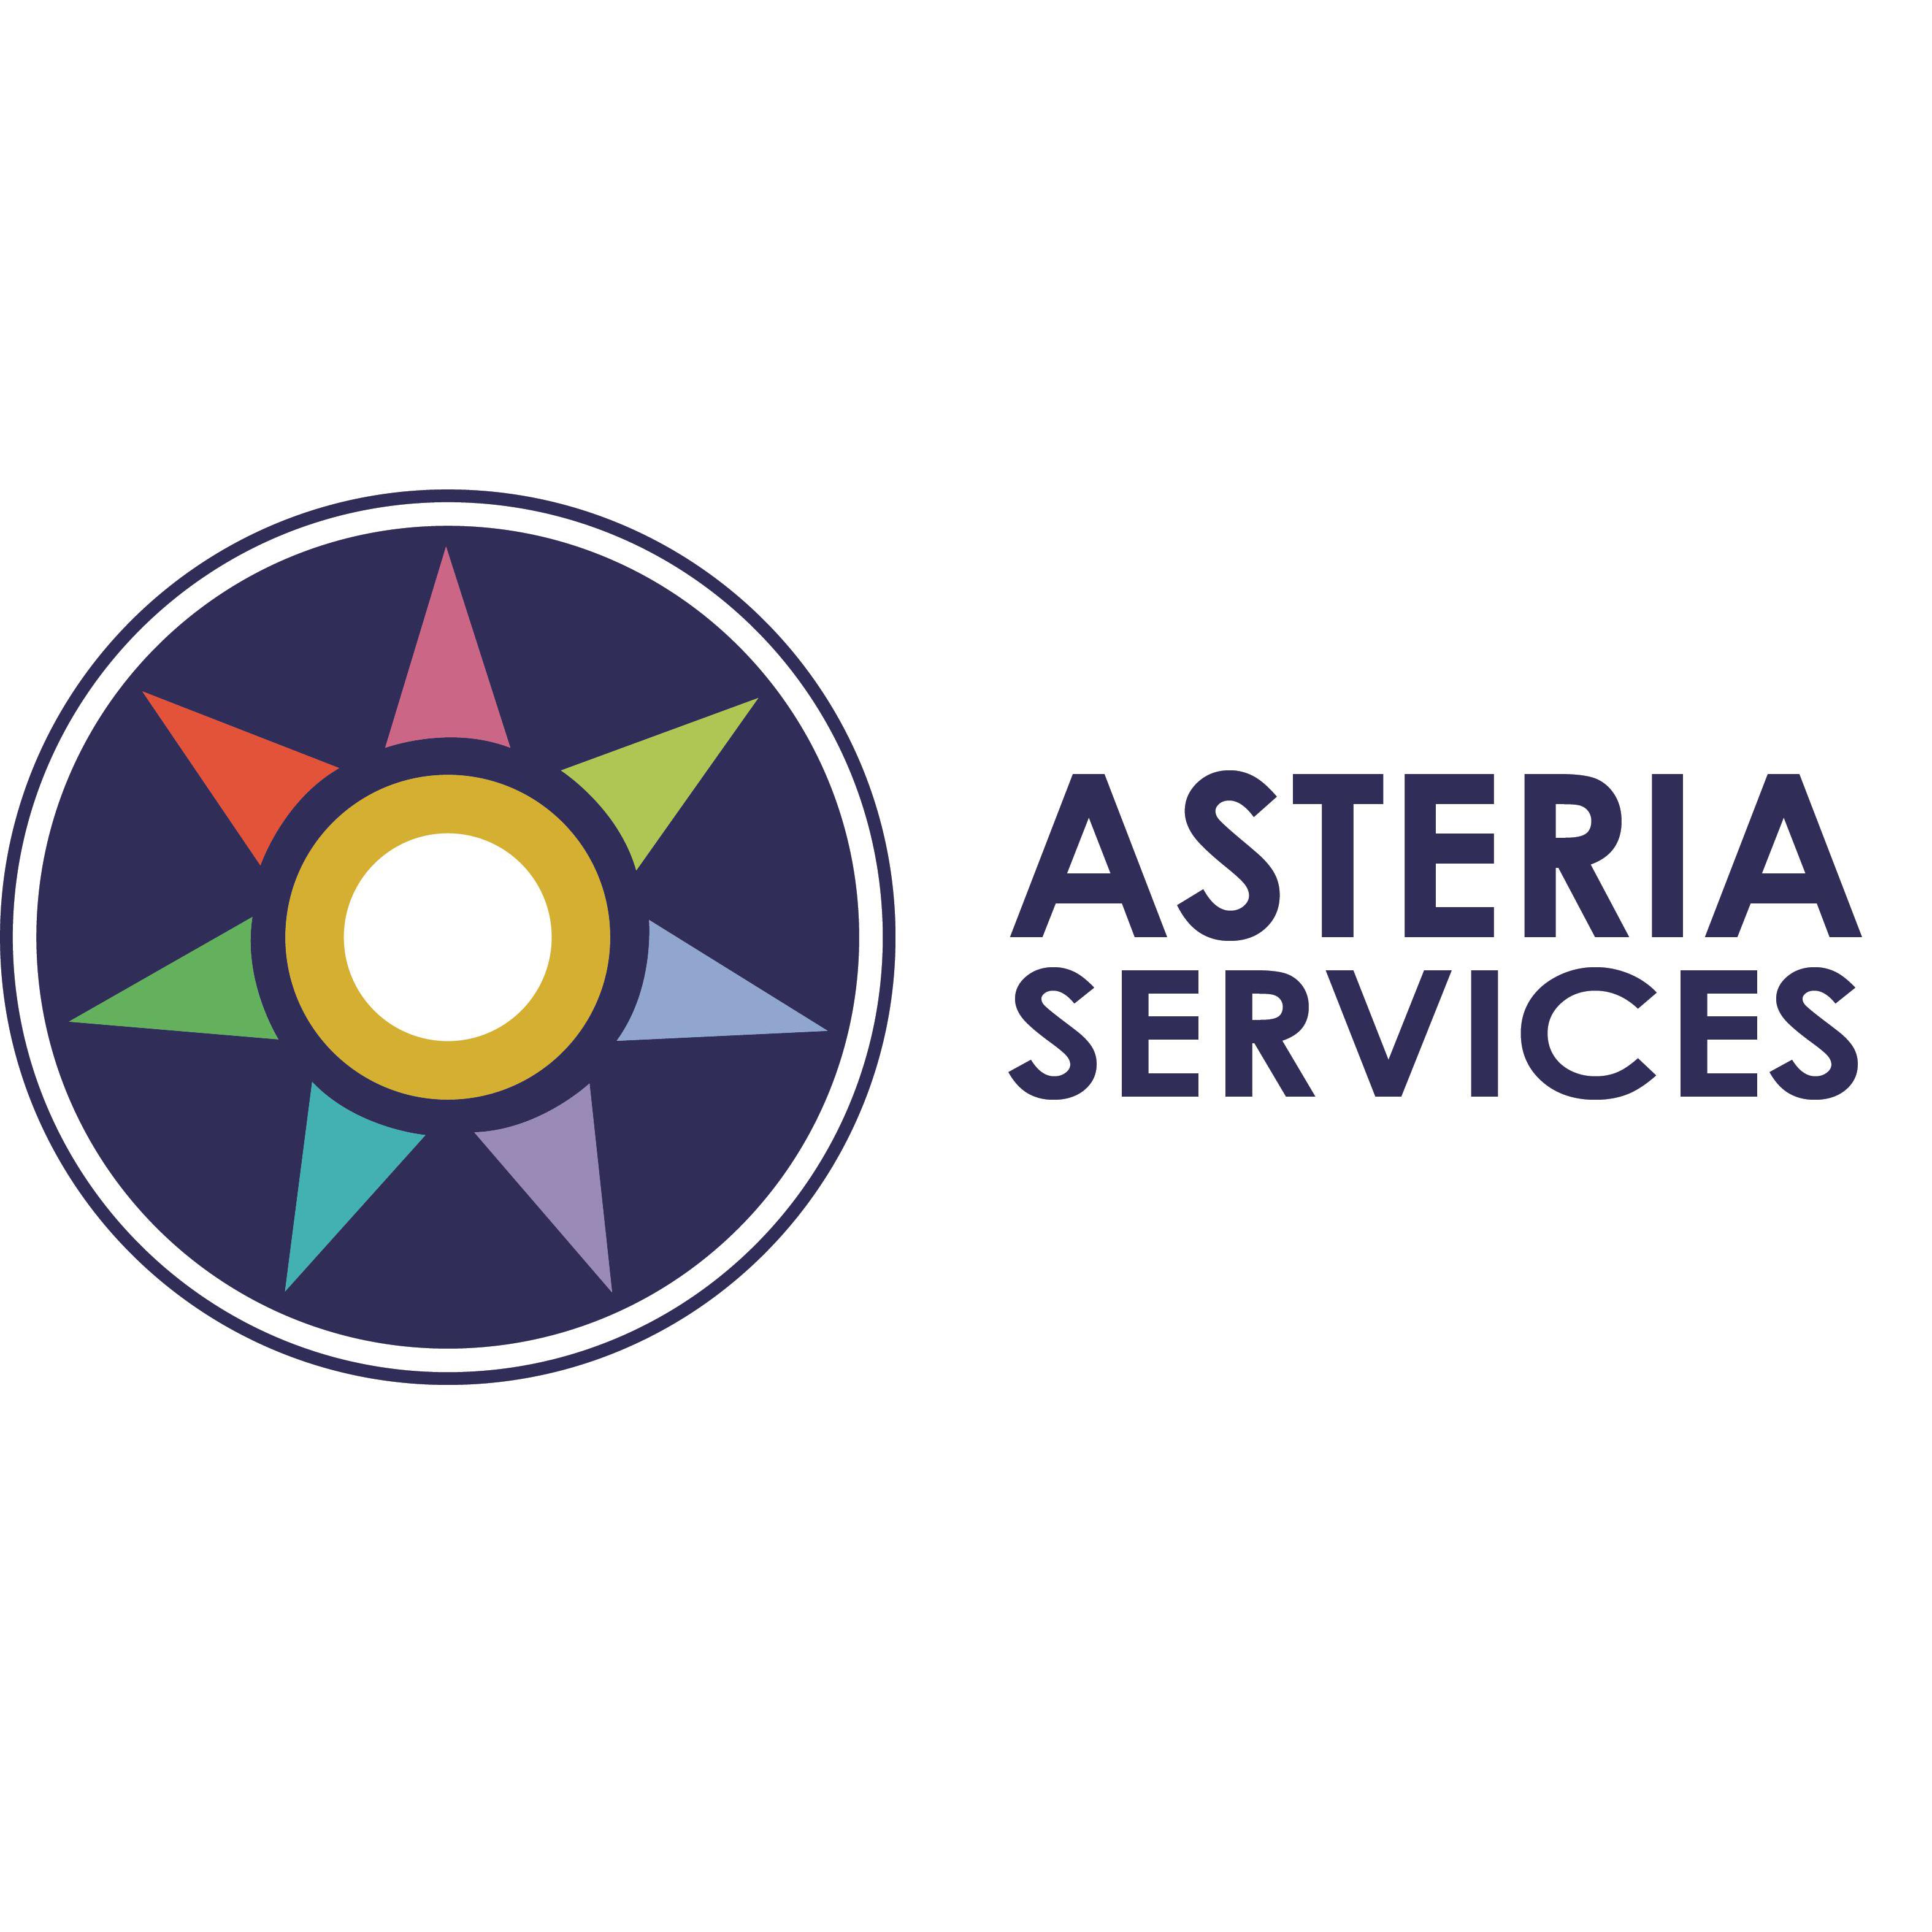 Asteria Business Services - Maryborough, VIC 3465 - (03) 5461 4111 | ShowMeLocal.com